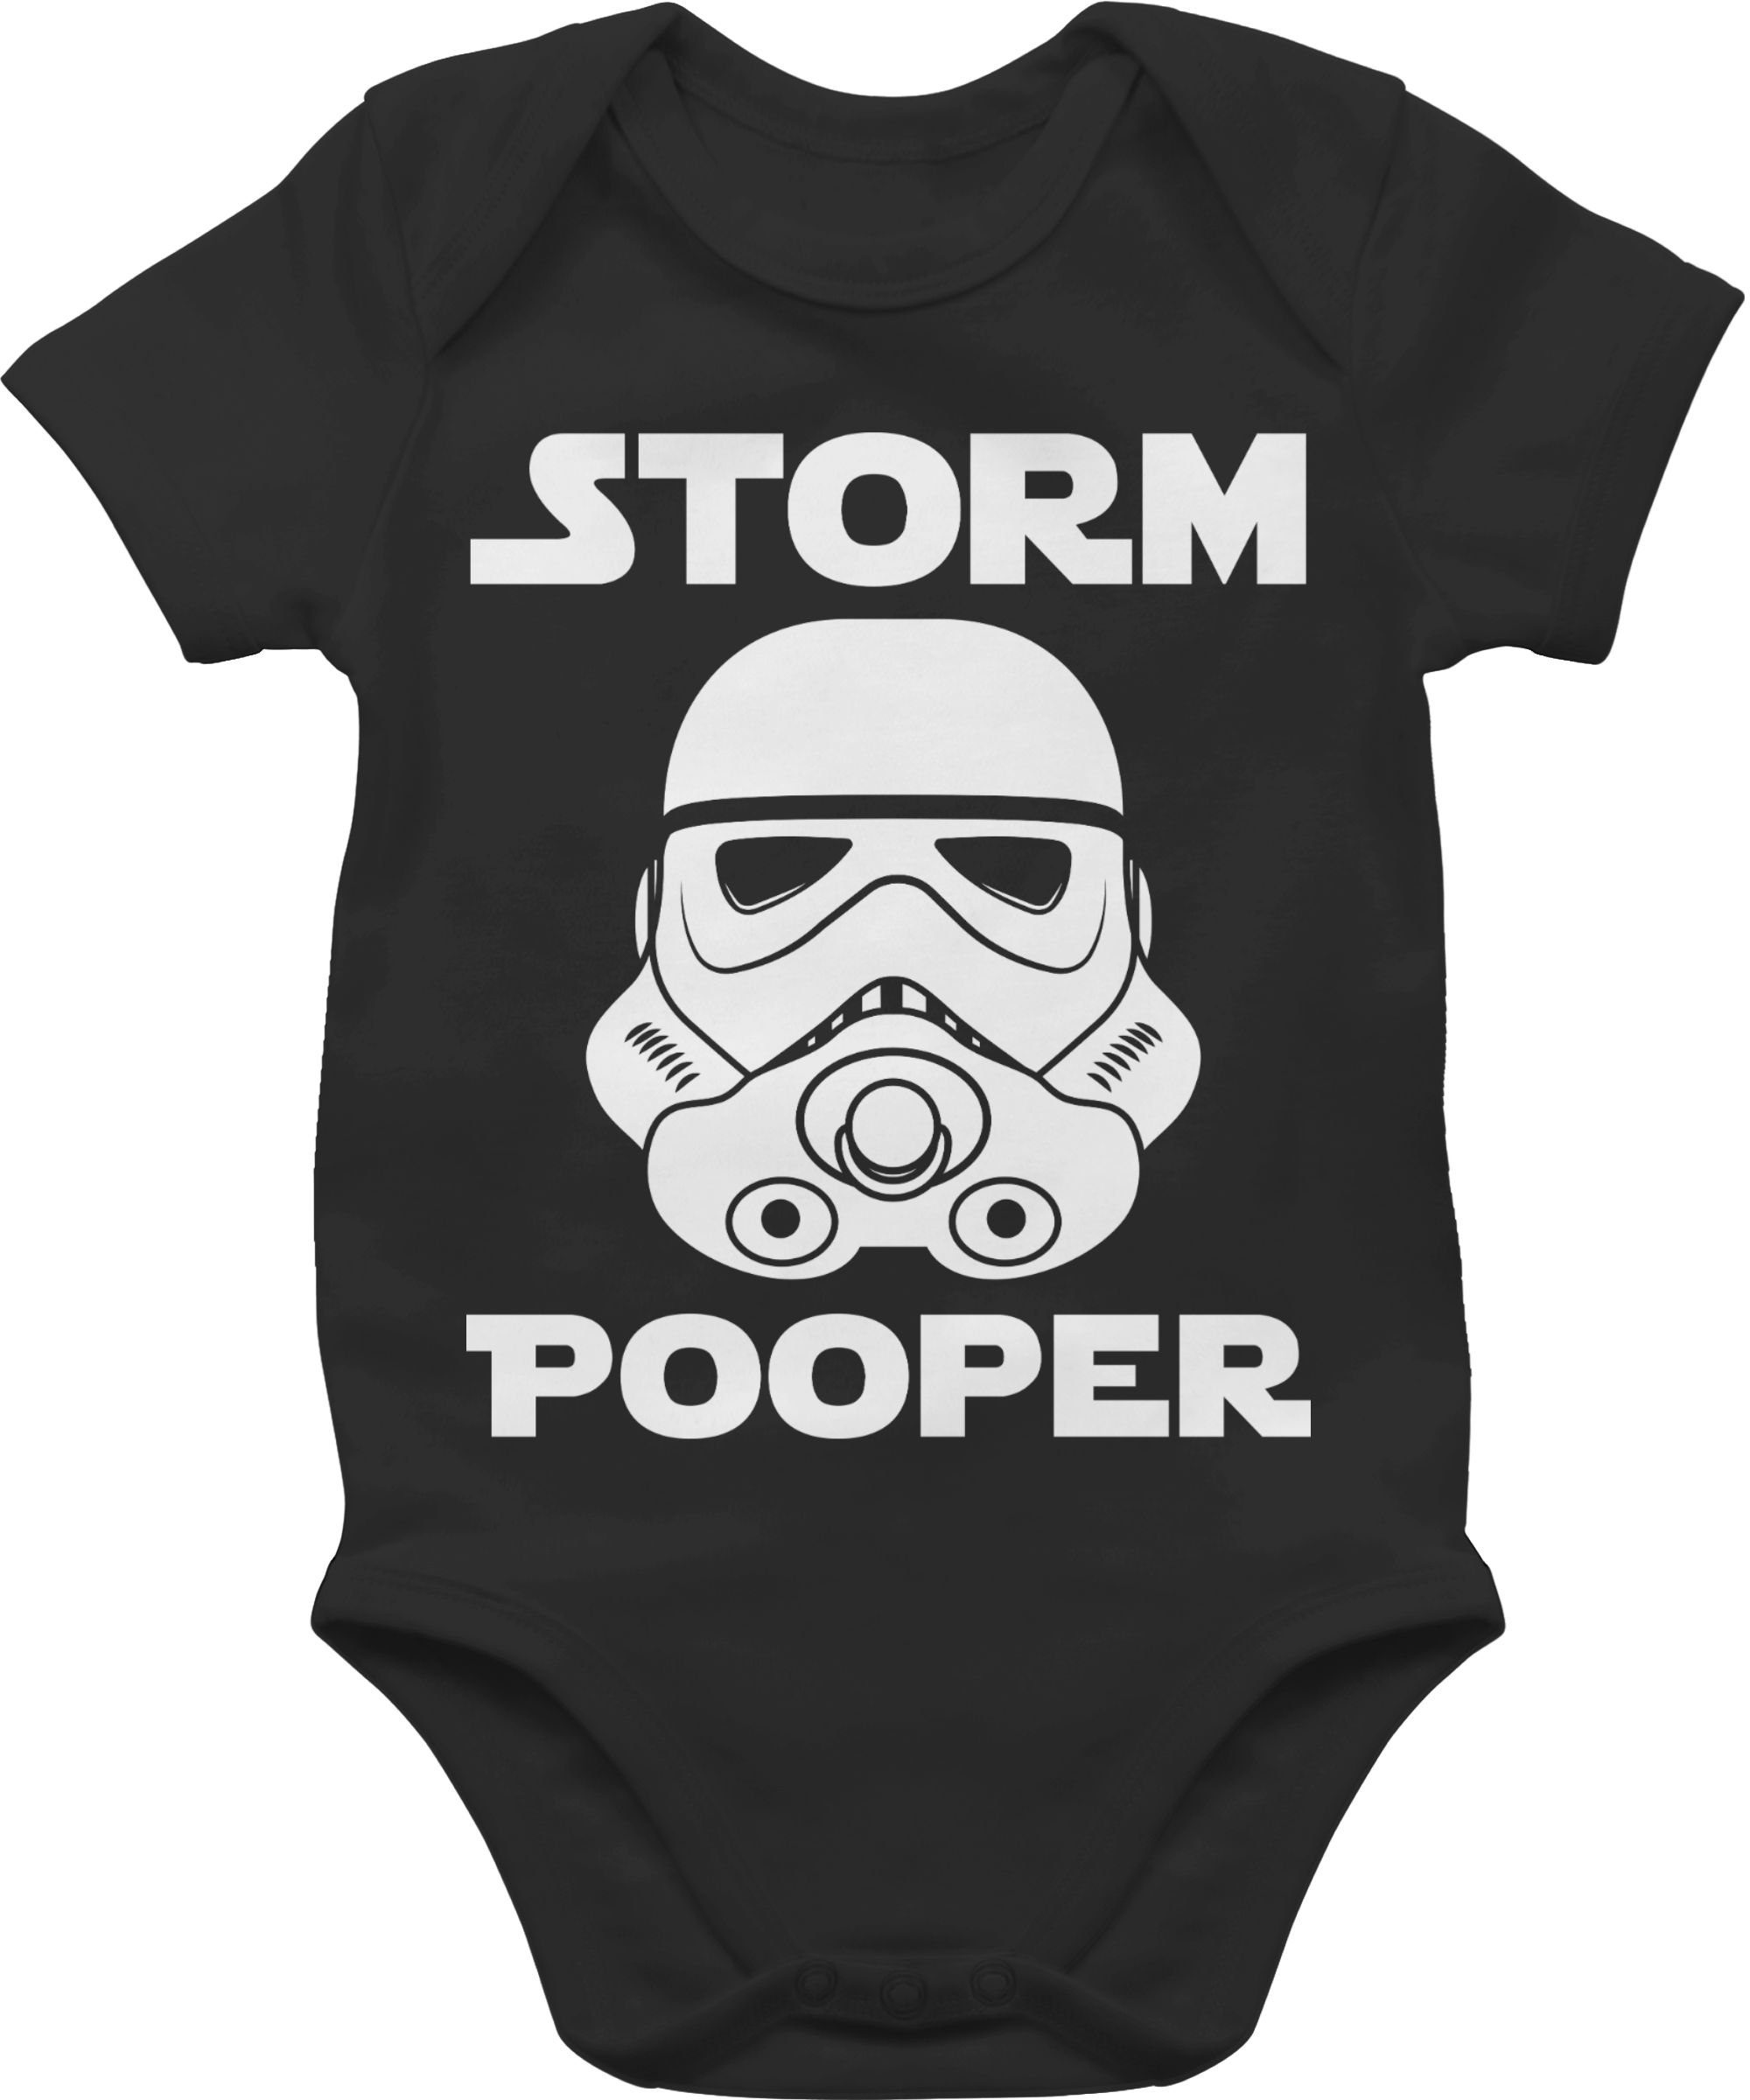 Pooper 1 Baby Schwarz Sprüche Shirtracer - Stormpooper Storm Shirtbody